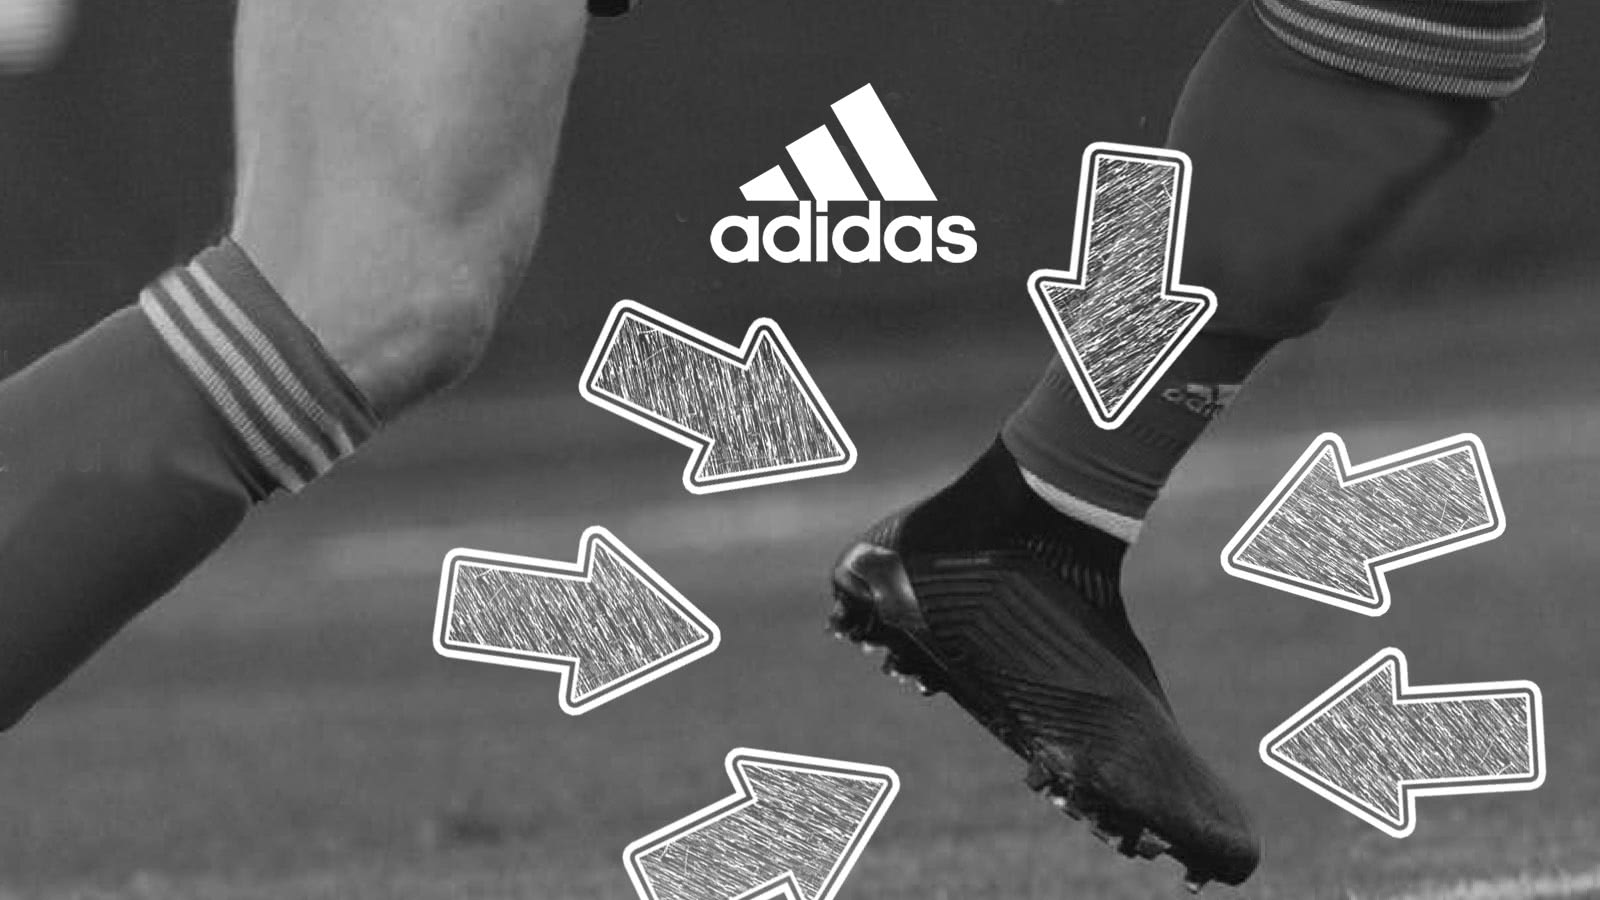 Die adidas Fußballschuhe der Top Torhüter wie Manuel Neuer